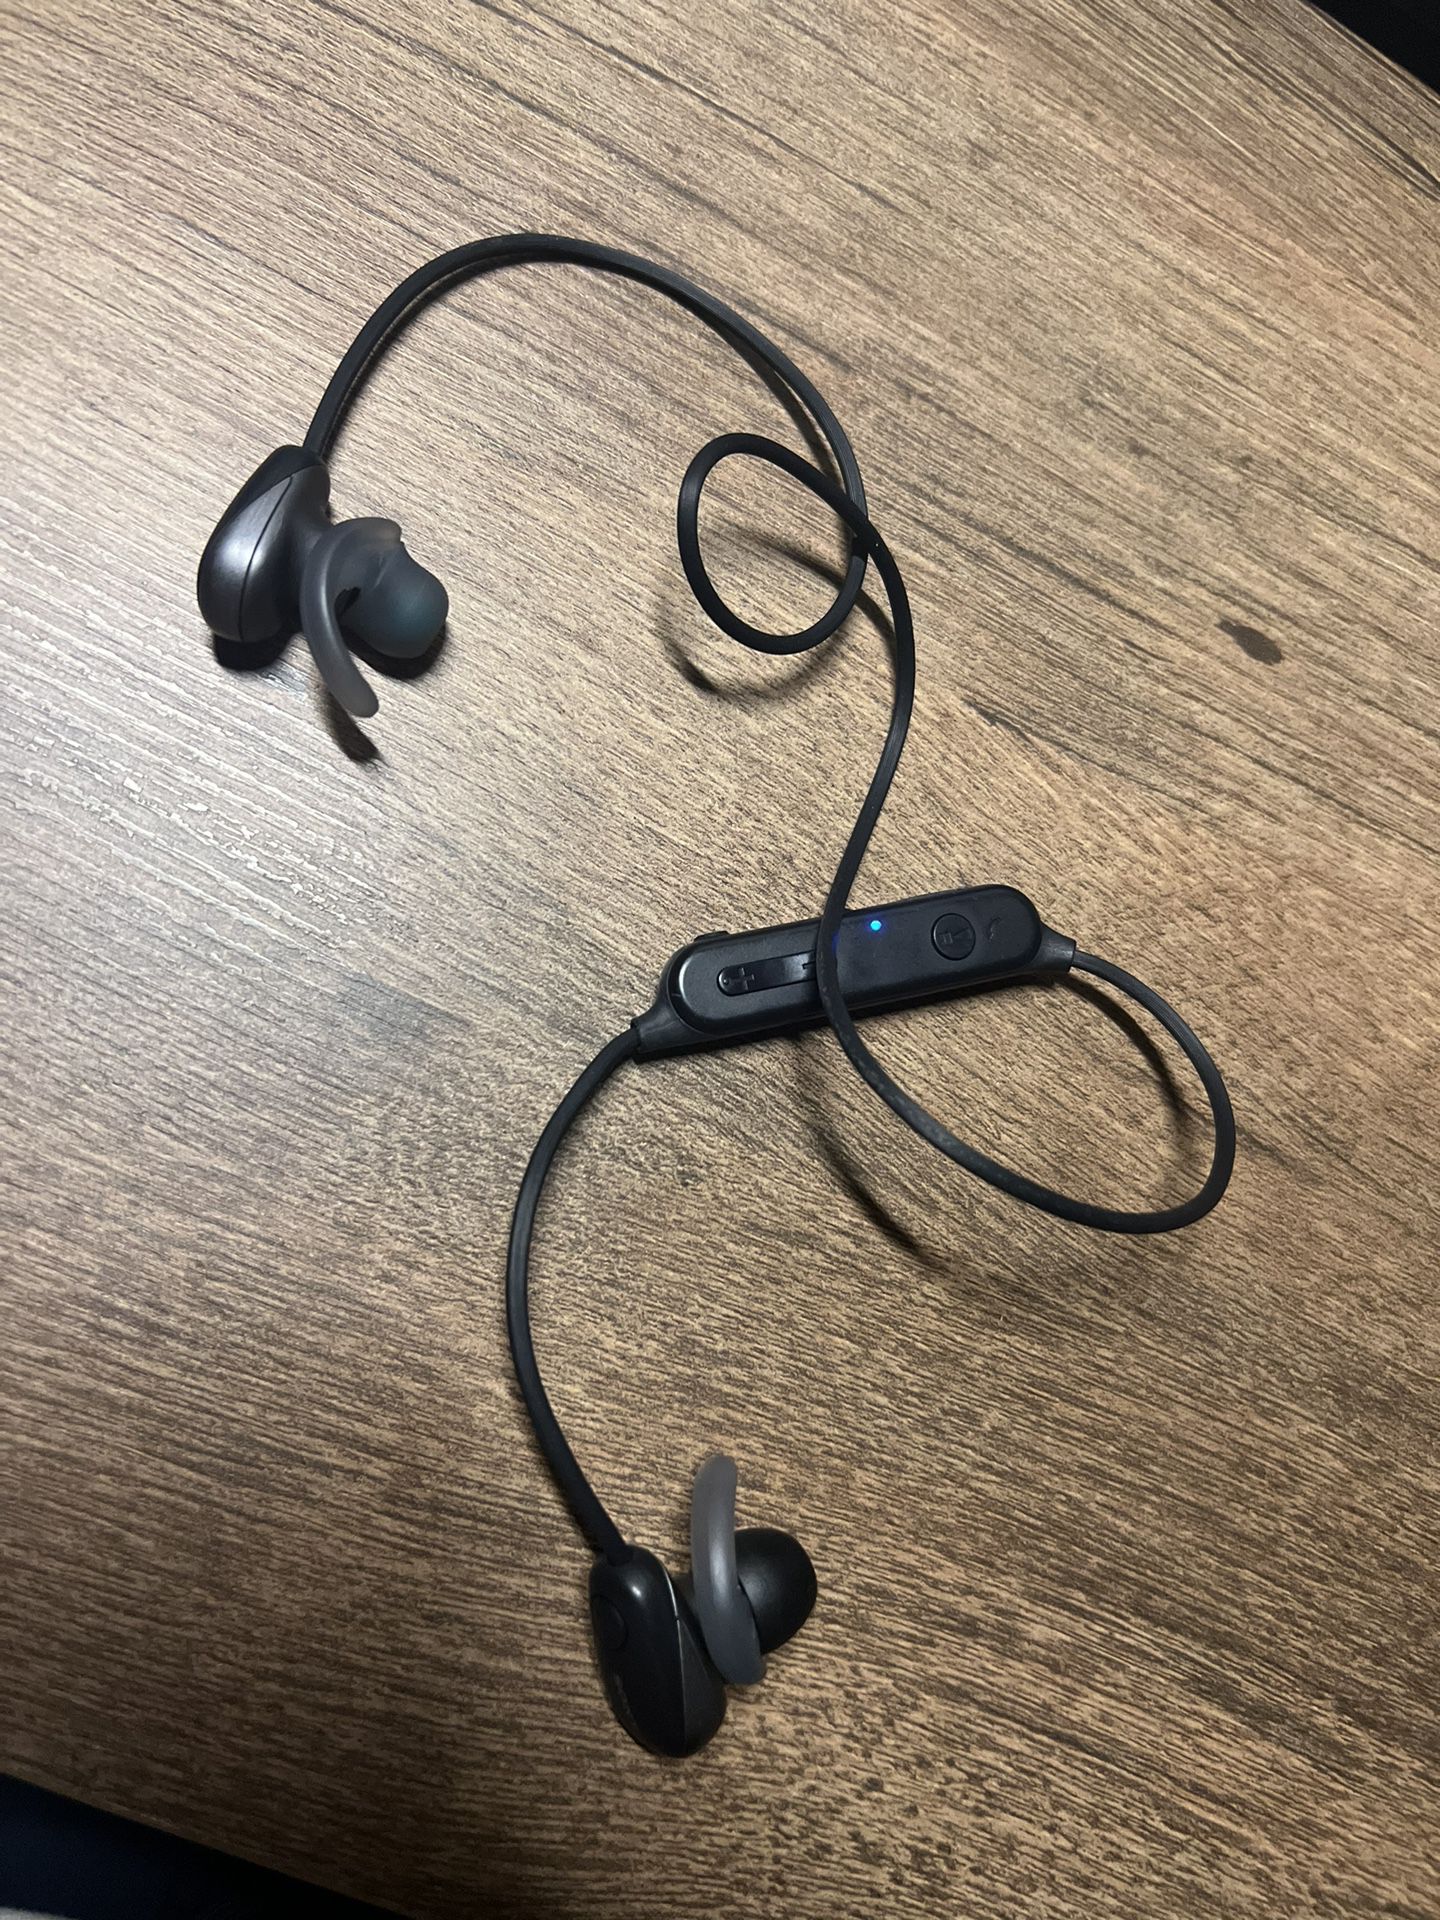 Sony SP600N Wireless Noise Canceling Sports In-Ear Headphones, Black (WI-SP600N/B)